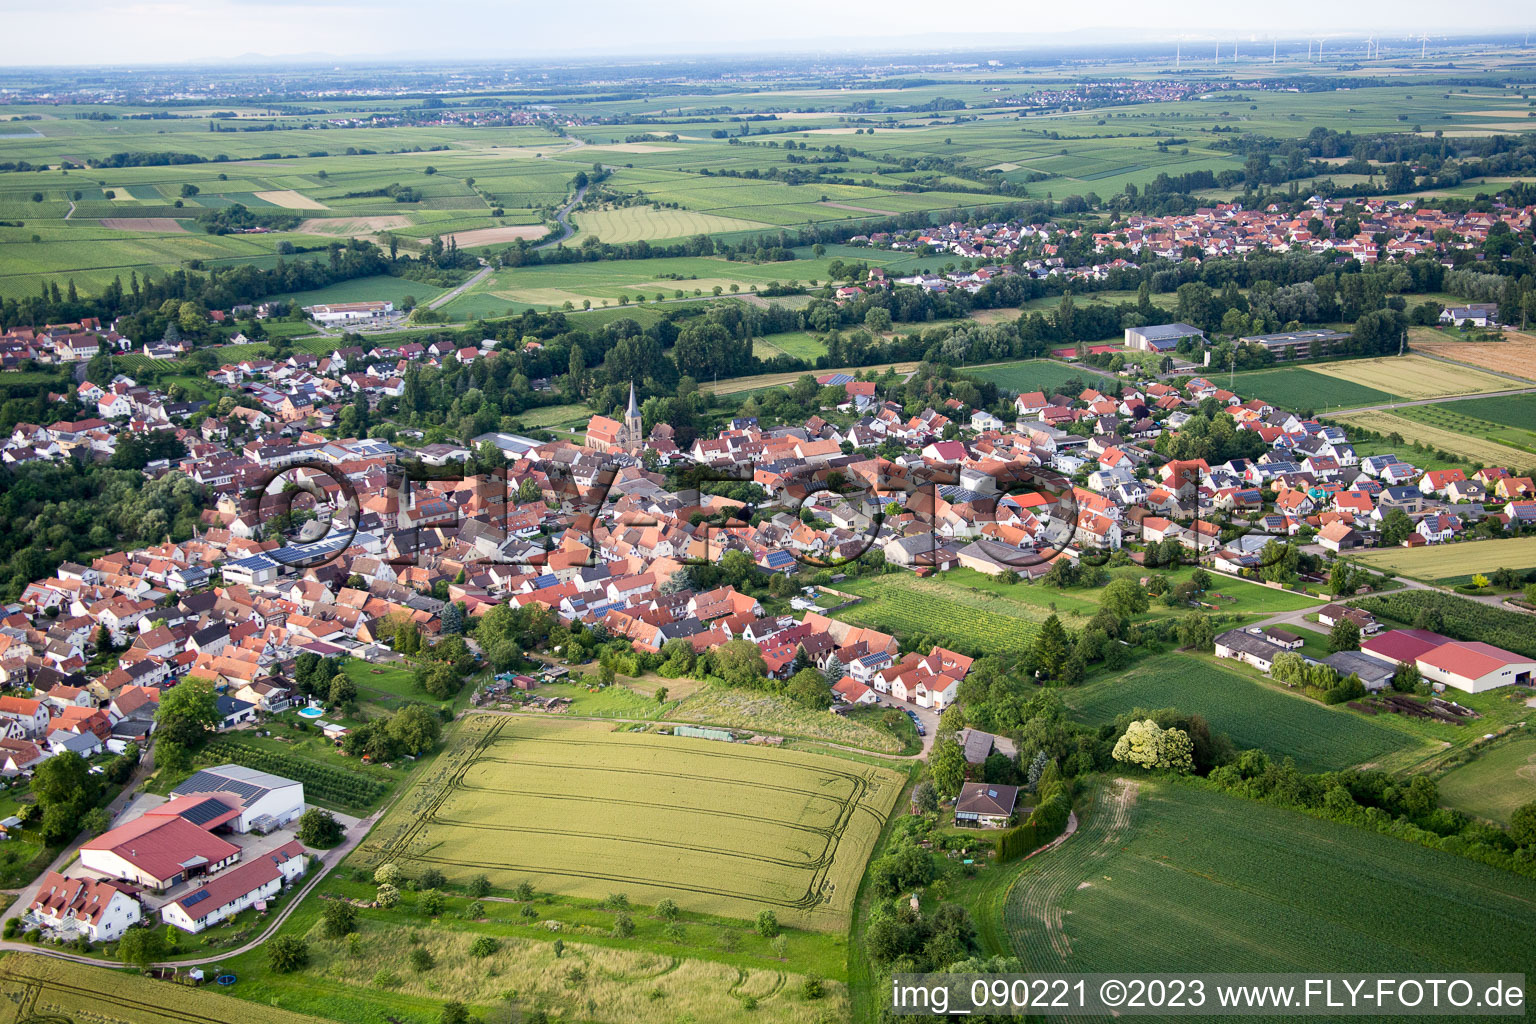 Quartier Ingenheim in Billigheim-Ingenheim dans le département Rhénanie-Palatinat, Allemagne vue du ciel